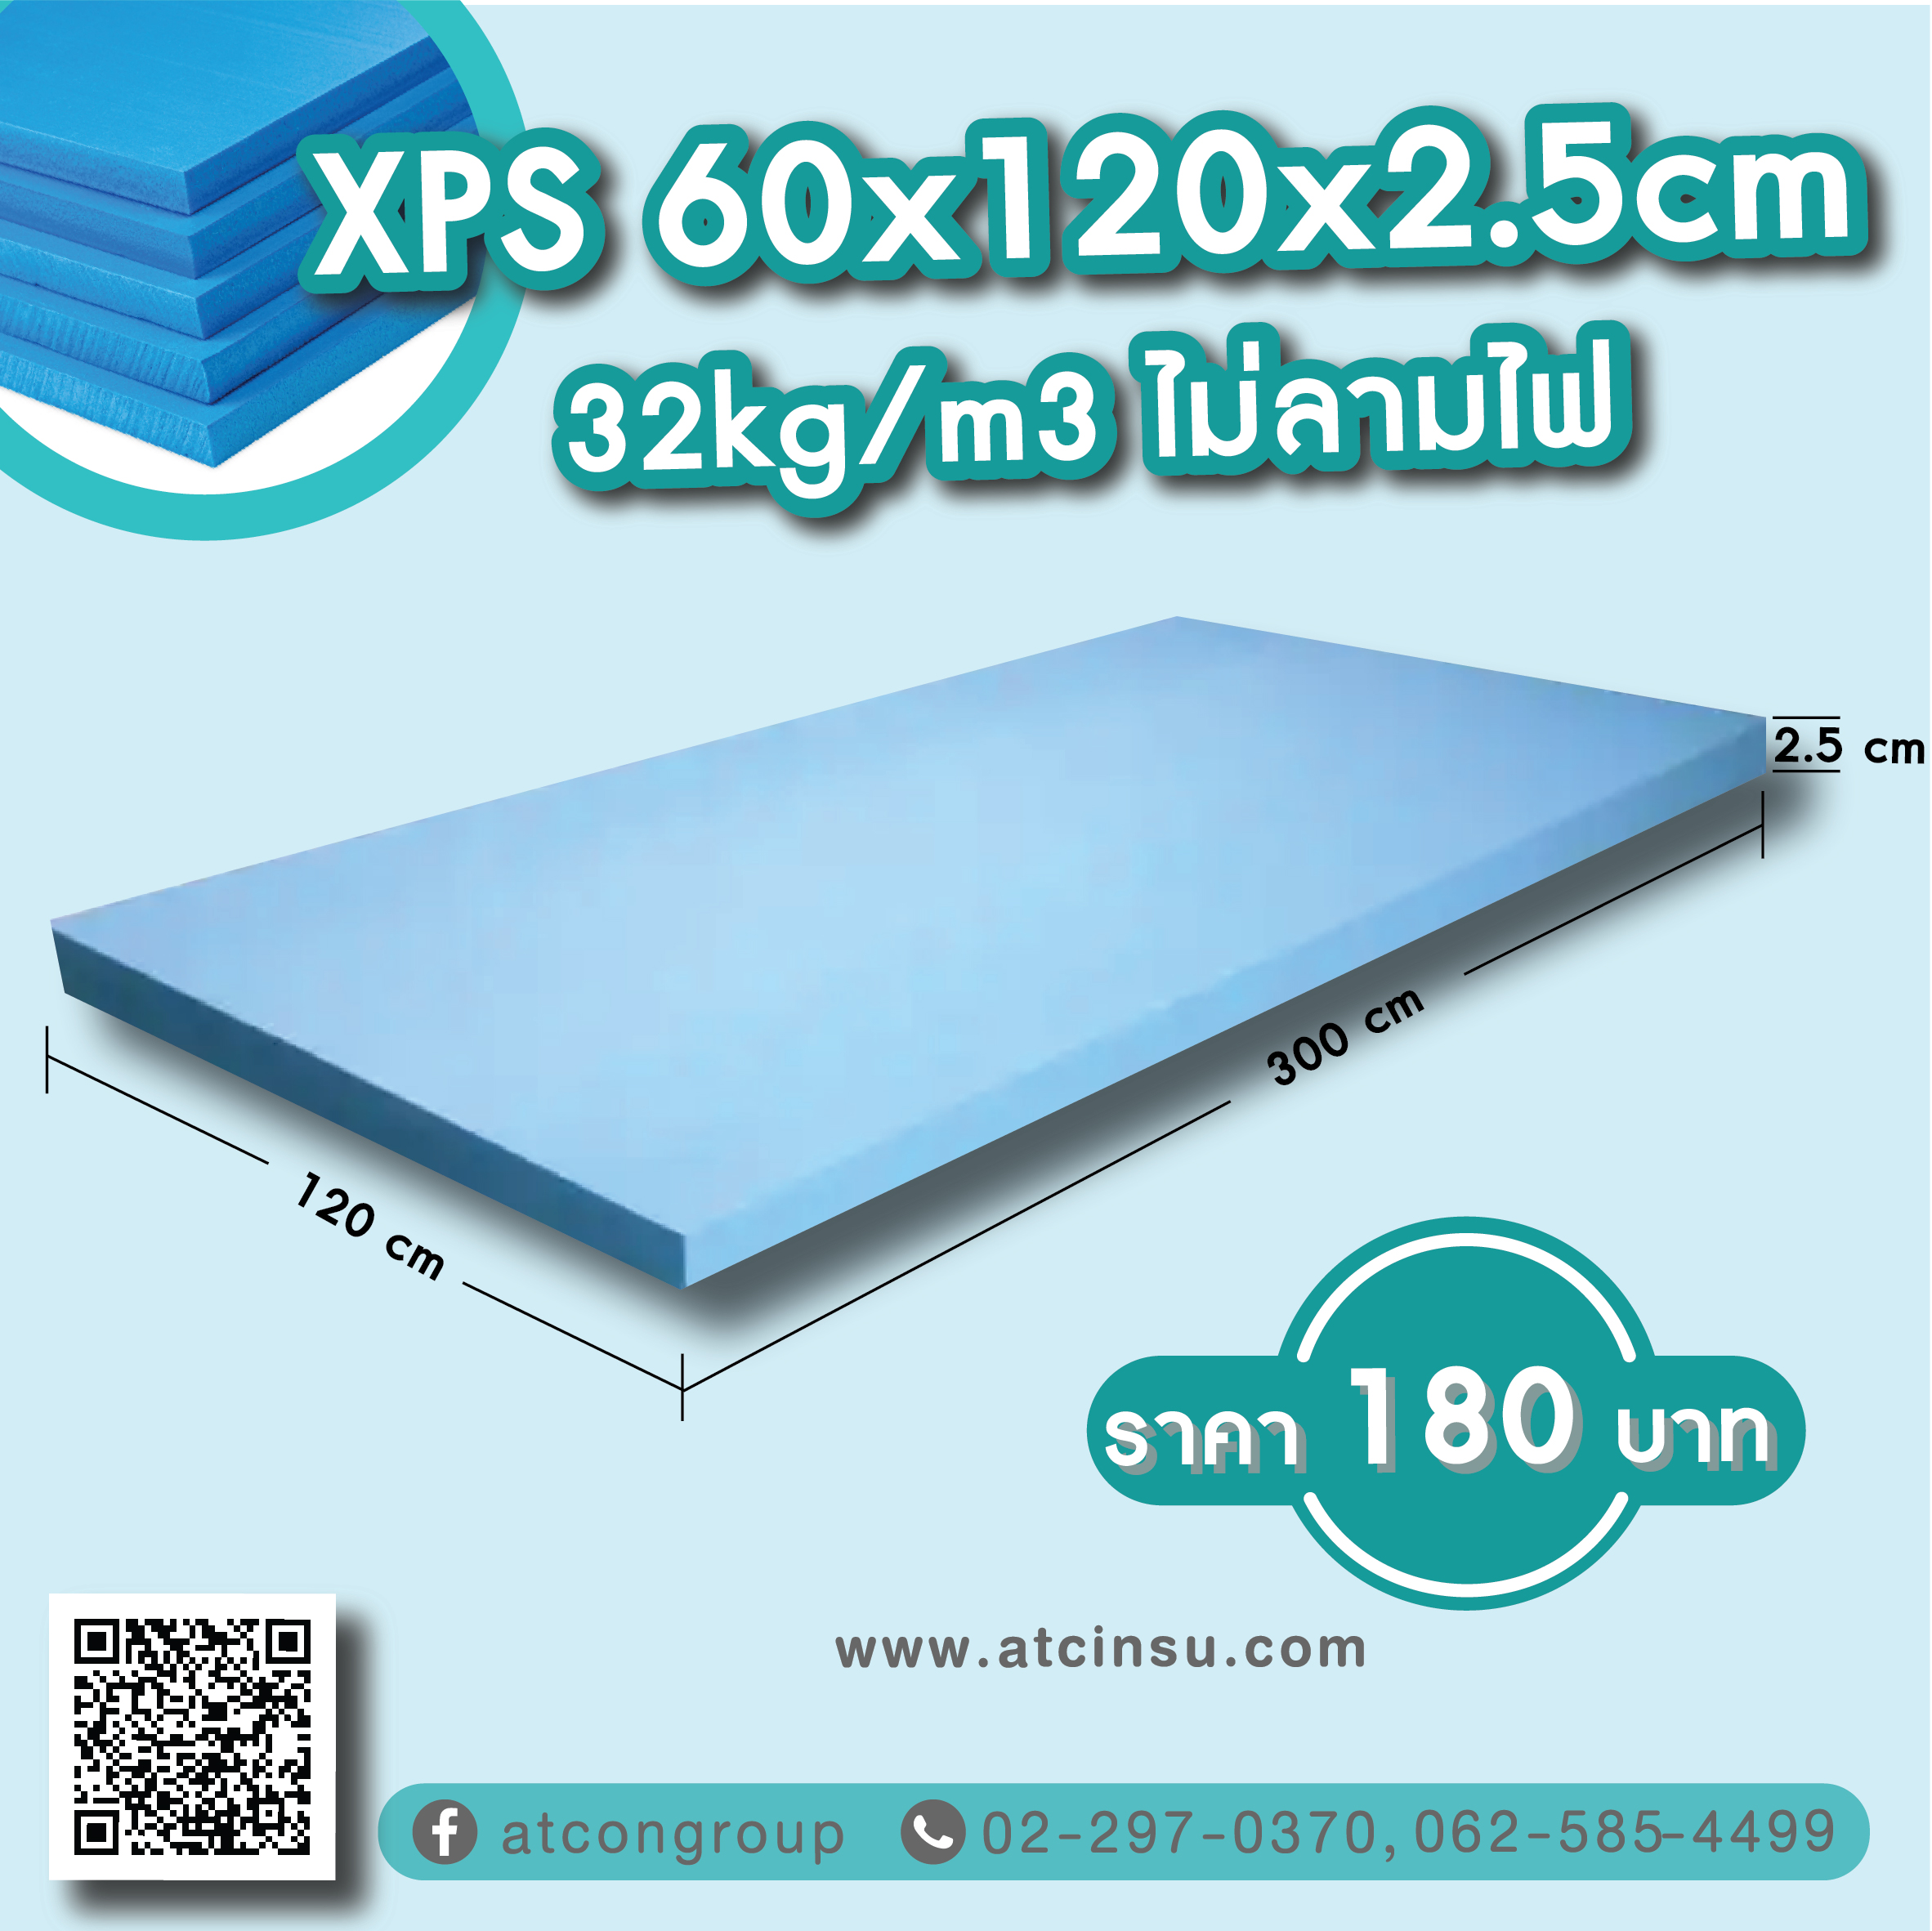 XPS 60 x 120 x 2.5cm 32kg/m3 ไม่ลามไฟ ราคา 180 บาท โพลีสไตรีนอัดรีด (XPS) XPS โฟมบอร์ด XPS (โพลีสไตรีนอัด) ทำจากโพลีสไตรีนเรซินเป็นวัตถุดิบรวมถึงวัสดุเสริมและโพลิเมอร์อื่นๆ ในขณะที่ให้ความร้อนและฉีดตัวเร่งปฏิกิริยา จากนั้นจึงอัดขึ้นรูปเพื่อสร้างกระดานพลาสติกโฟมแข็ง มีค่าการดูดความชื้นต่ำมาก (แทบไม่มีการดูดซึมน้ำเลย) ค่าการนำความร้อนต่ำ และความต้านทานแรงอัดสูง พื้นผิวเรียบสม่ำเสมอ และภายในเป็นเซลล์ปิดสนิท ดังนั้นจึงมีคุณสมบัติต้านทานแรงดันสูง น้ำหนักเบา ไม่ดูดซับ อัดอากาศ ทนต่อการสึกหรอ และย่อยสลายไม่ได้